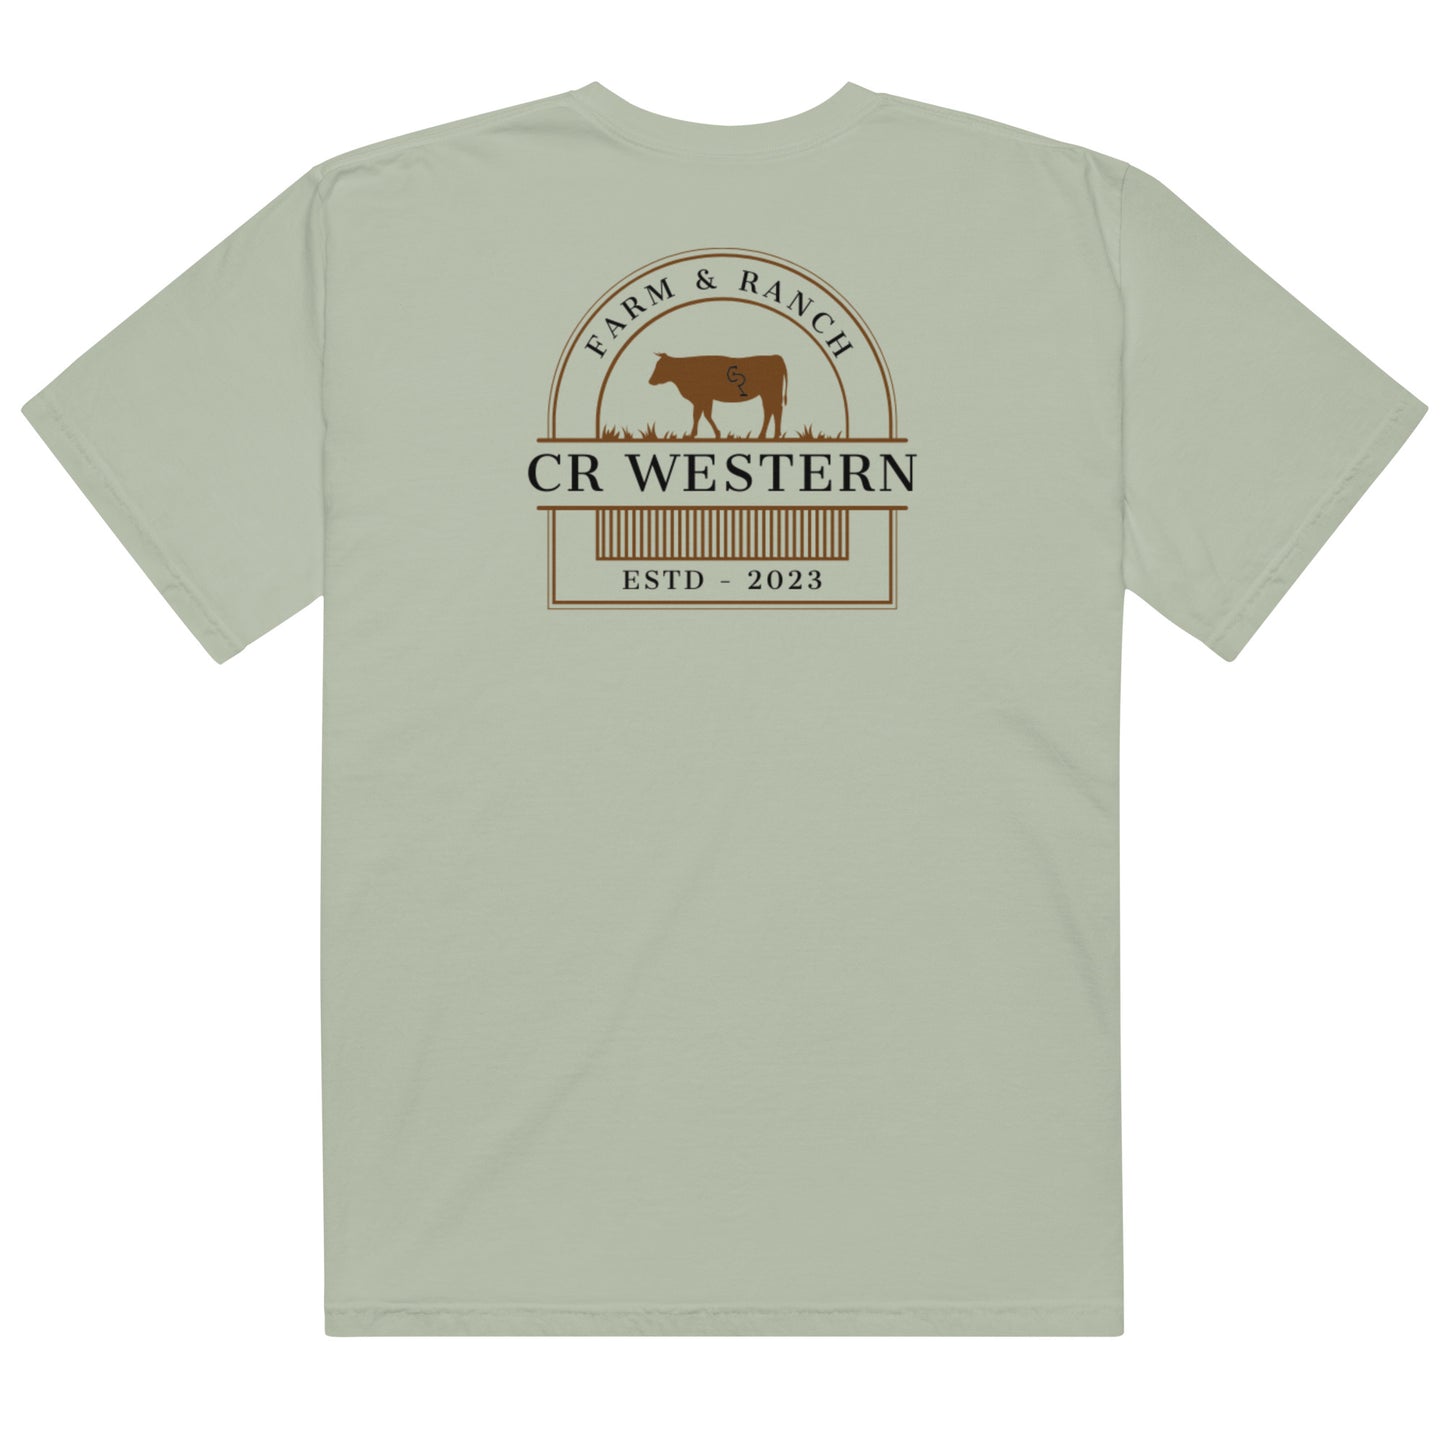 CR Western Farm & Ranch